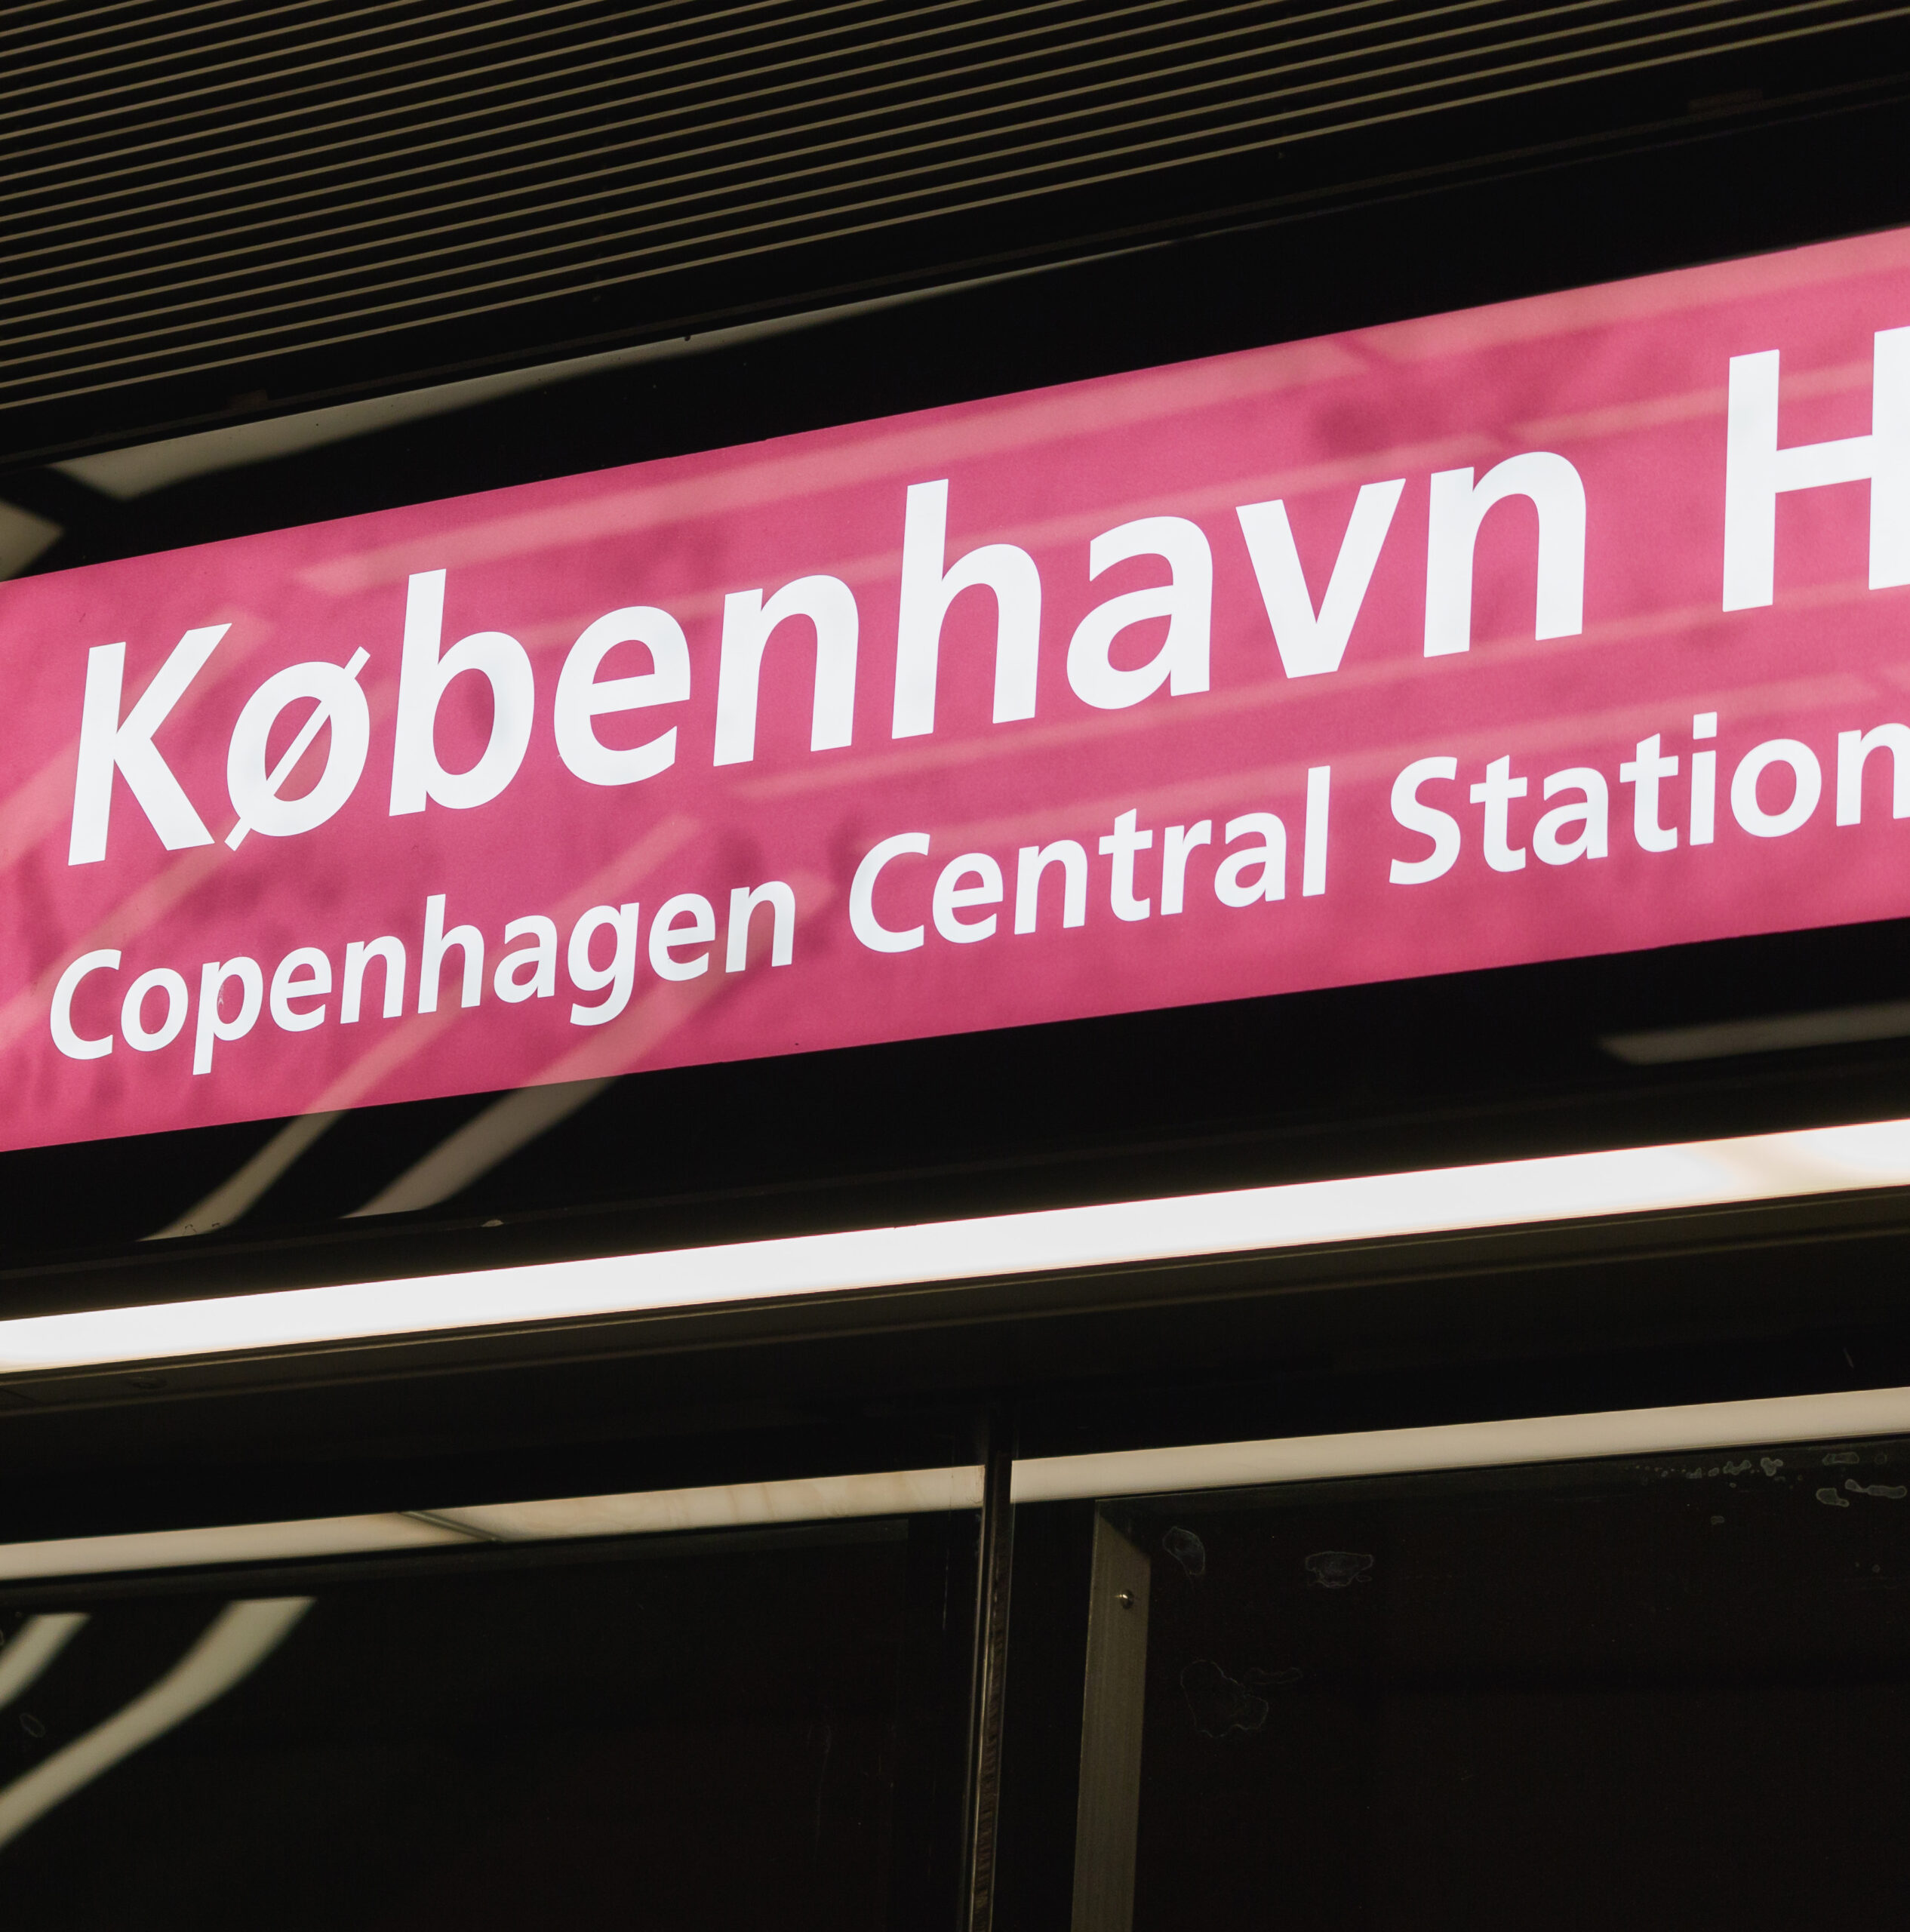 Metrô de Copenhague — Cityringen (Linha Circular): redução de riscos utilizando a garantia progressiva no Metrô de Copenhague